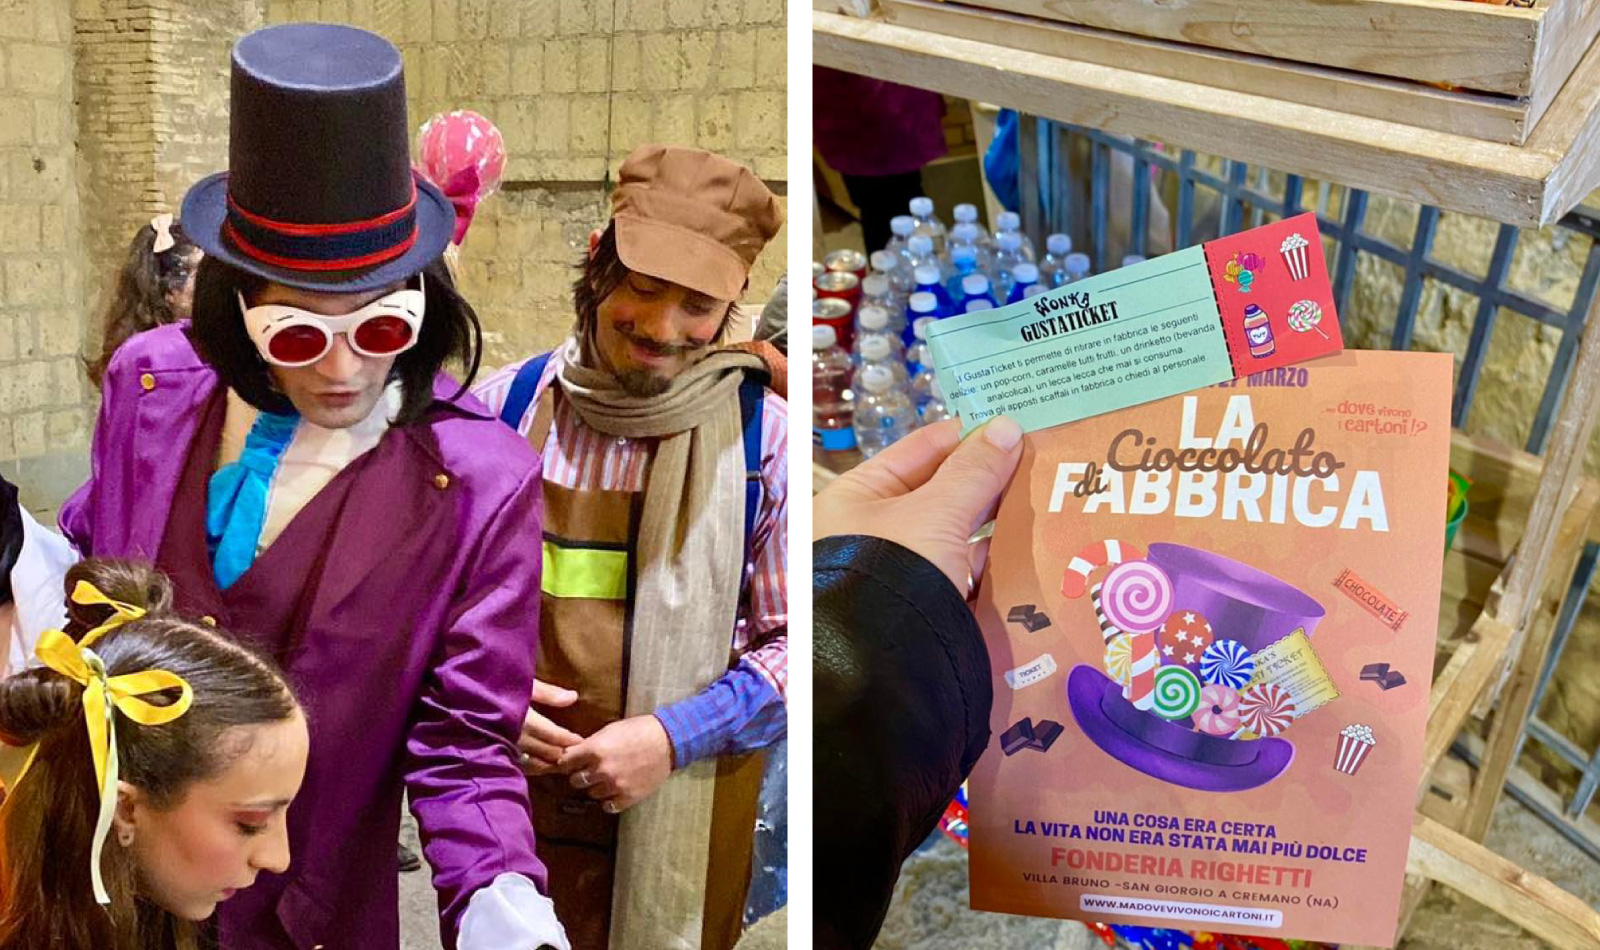 La Fabbrica di Cioccolato di Willy Wonka a San Giorgio a Cremano